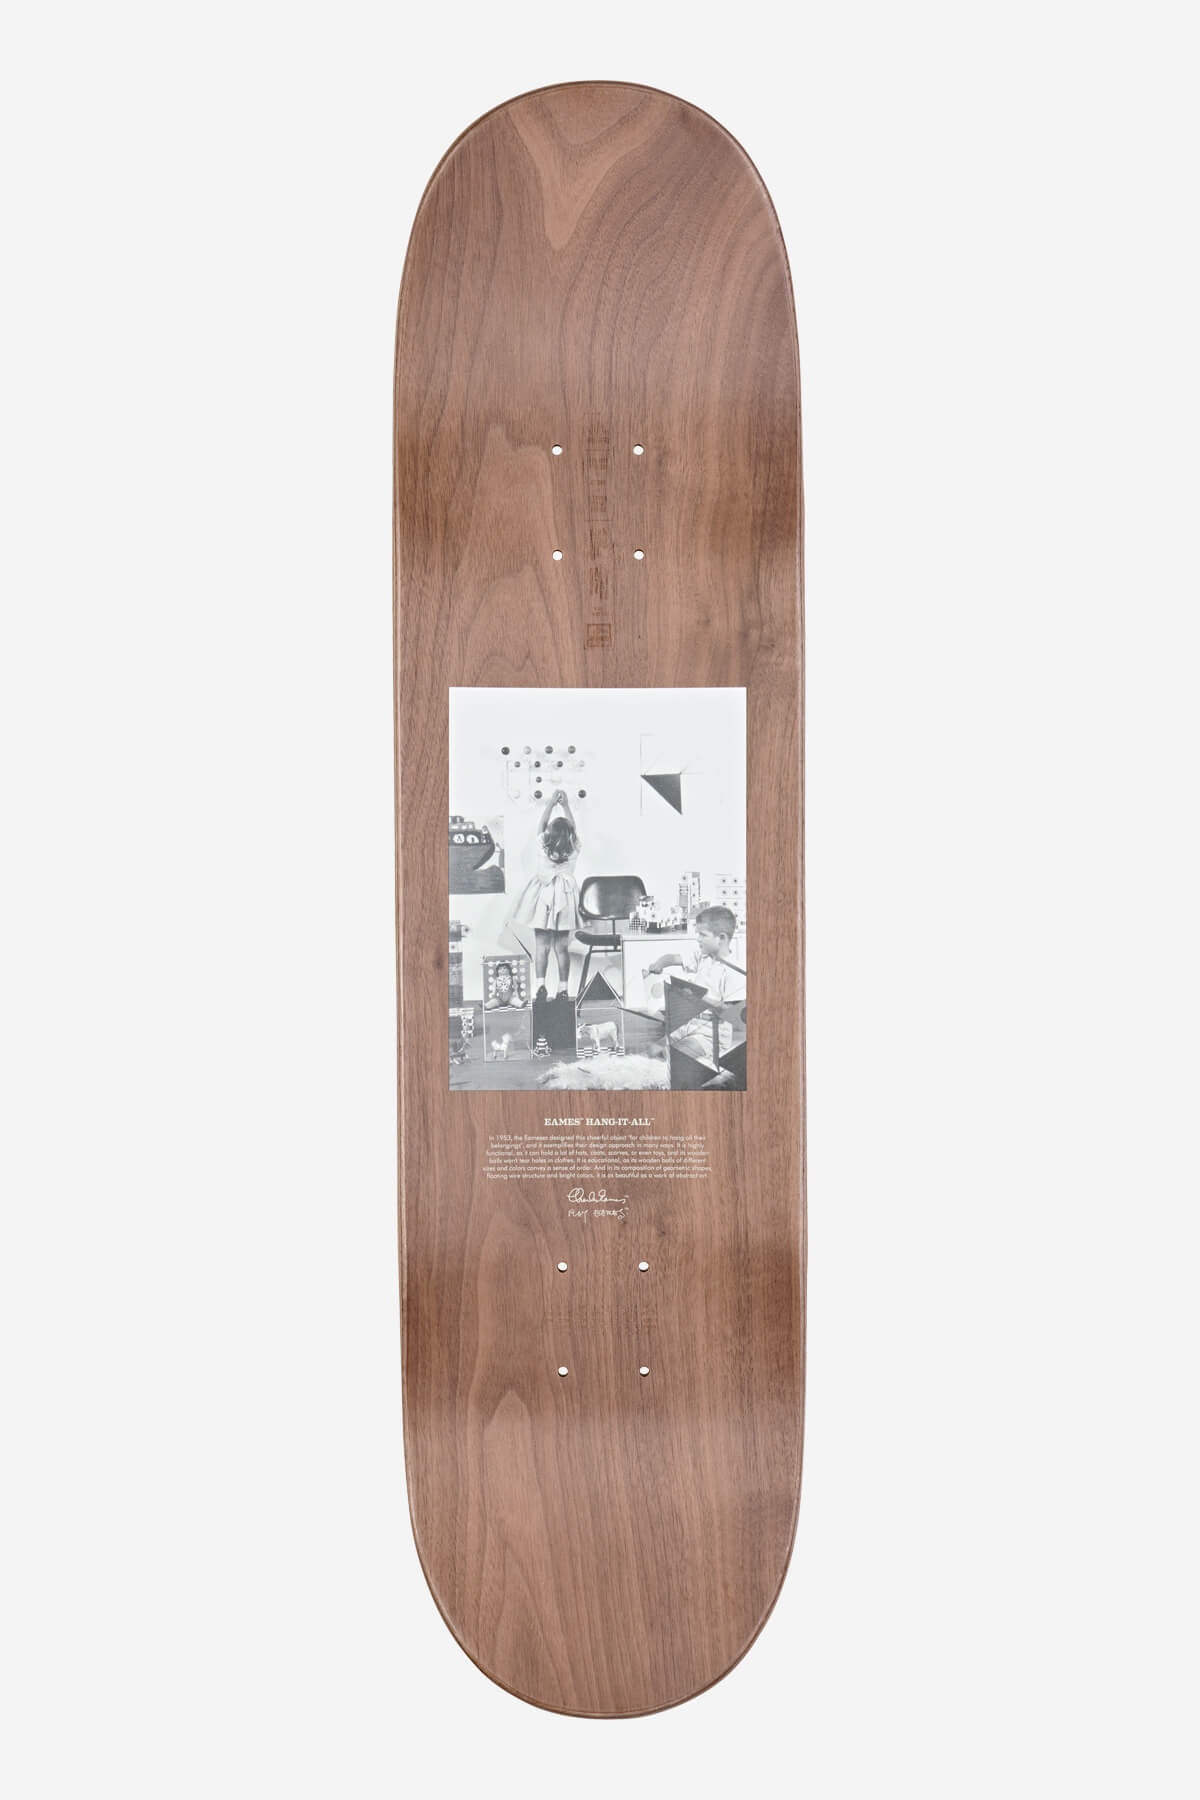 Globe - Silhouette Eames - Da appendere - 8,25" Skateboard Deck